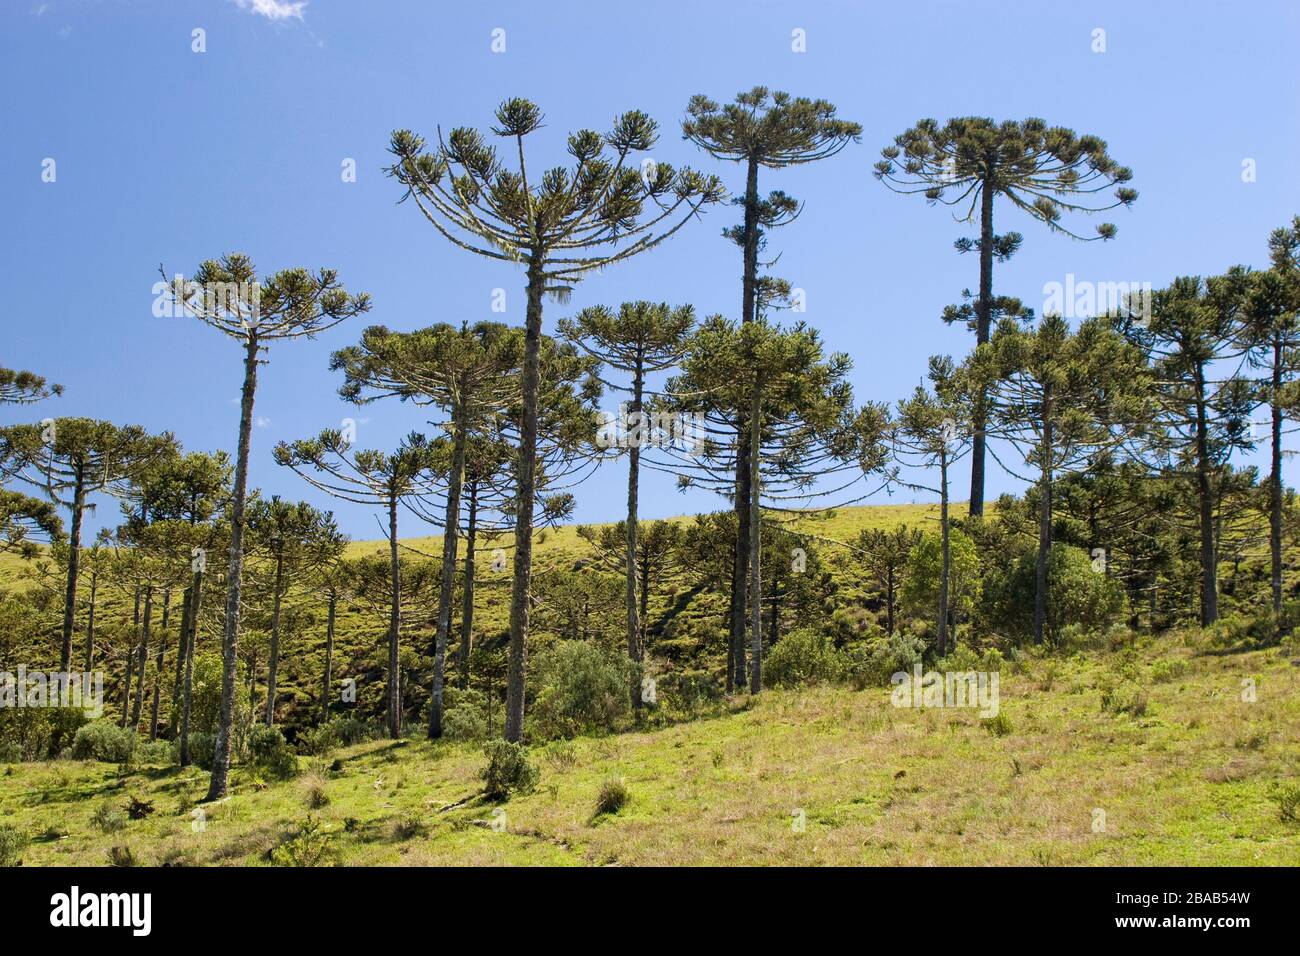 Forest of Araucaria, Pinheiro-pity-paraná (Araucaria angustifolia), São José dos Ausentes, Rio Grande do Sul, Brazil Stock Photo